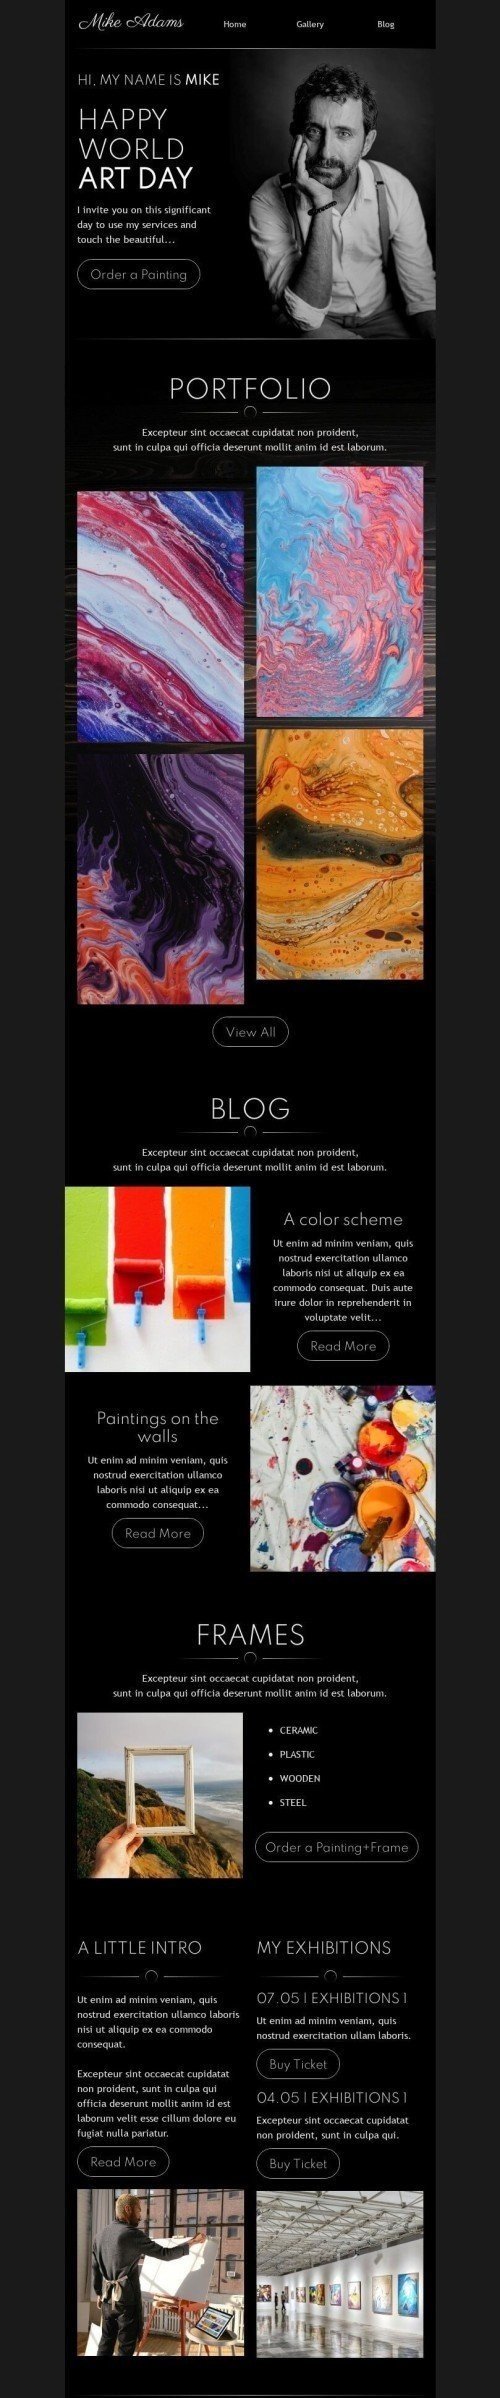 Weltkunsttag E-Mail-Vorlage «Berühre die Schönheit» für Kunstgalerie-Branche Desktop-Ansicht